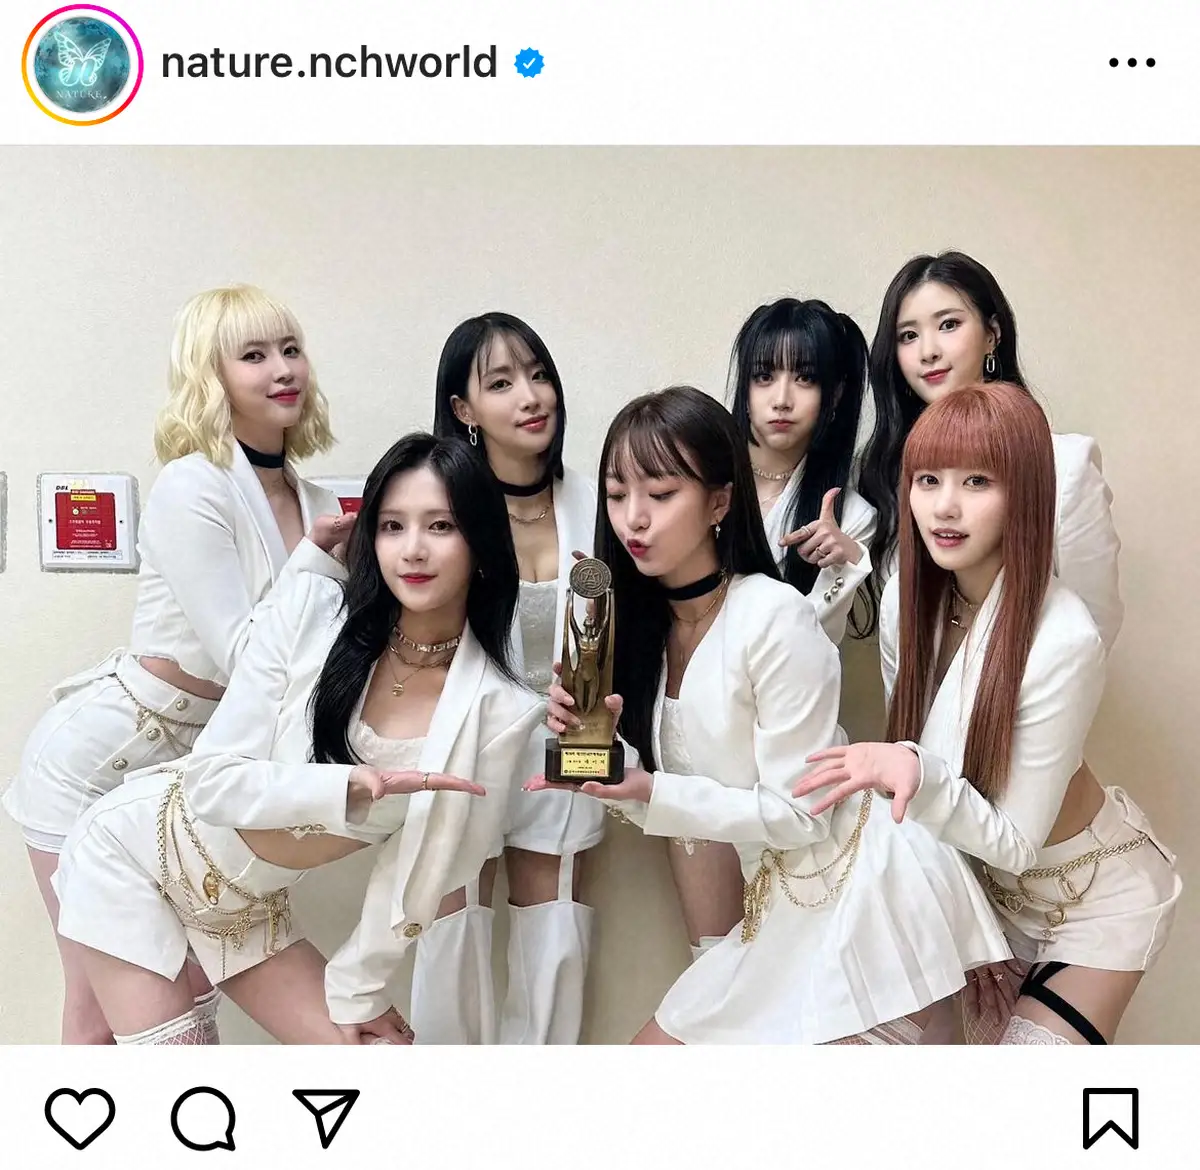 キャバ勤務発覚の韓国アイドル所属　「NATURE」が解散発表「長い検討の末、別々の道に」